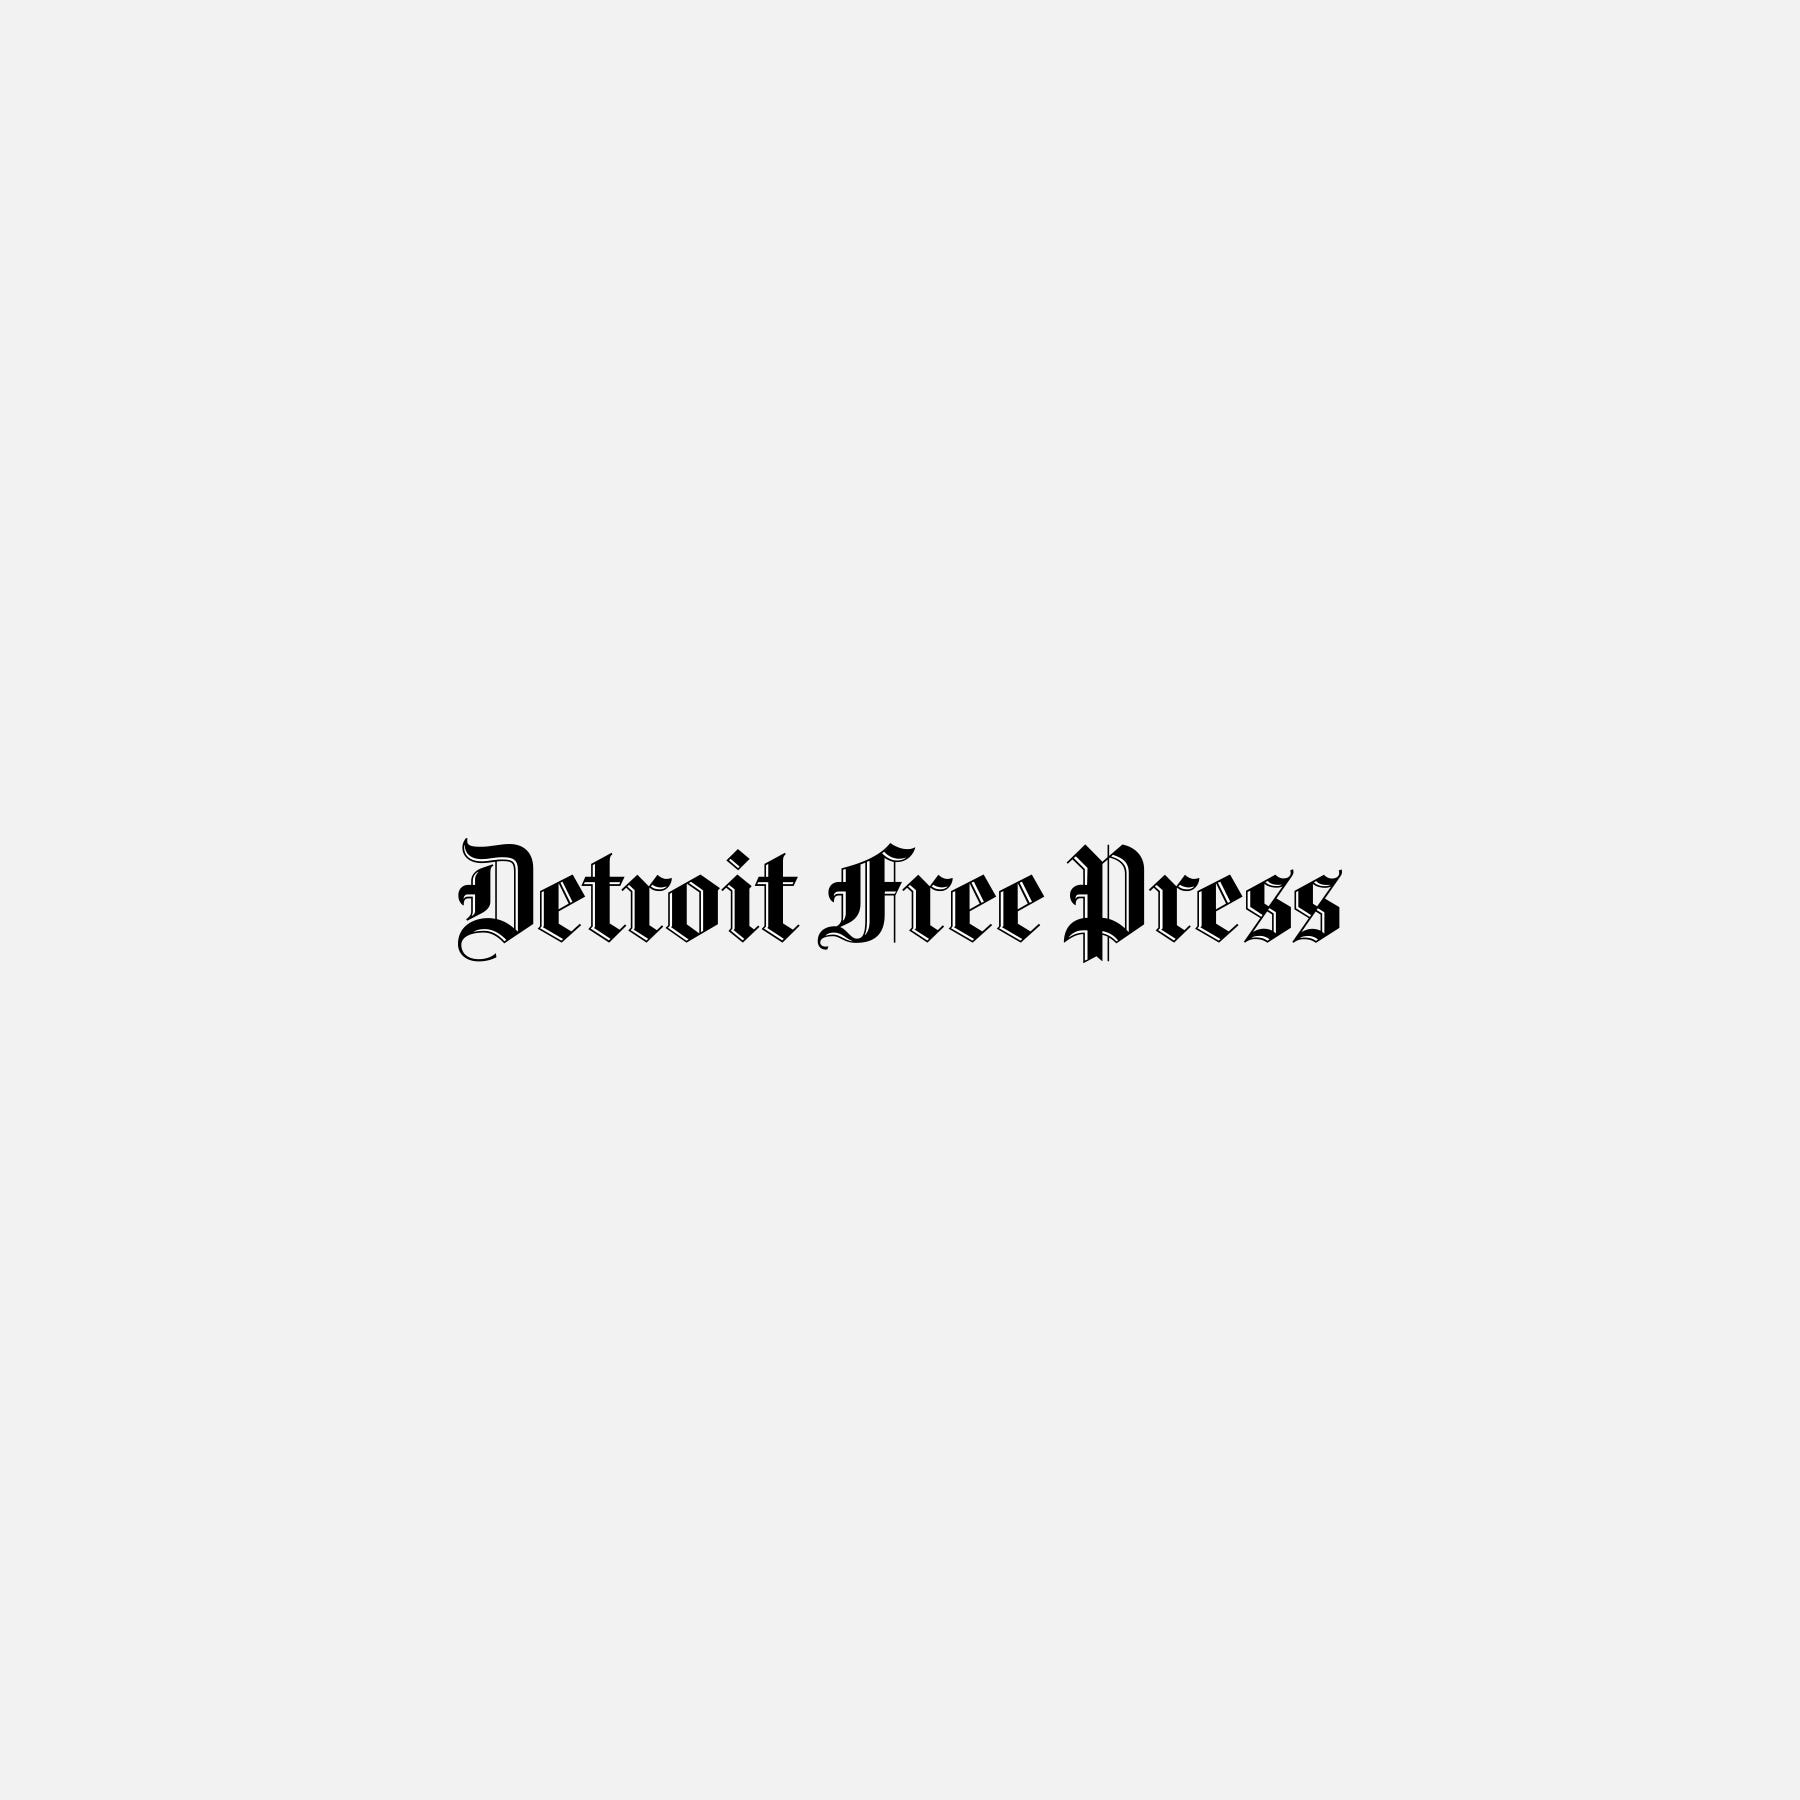 detroit free press election